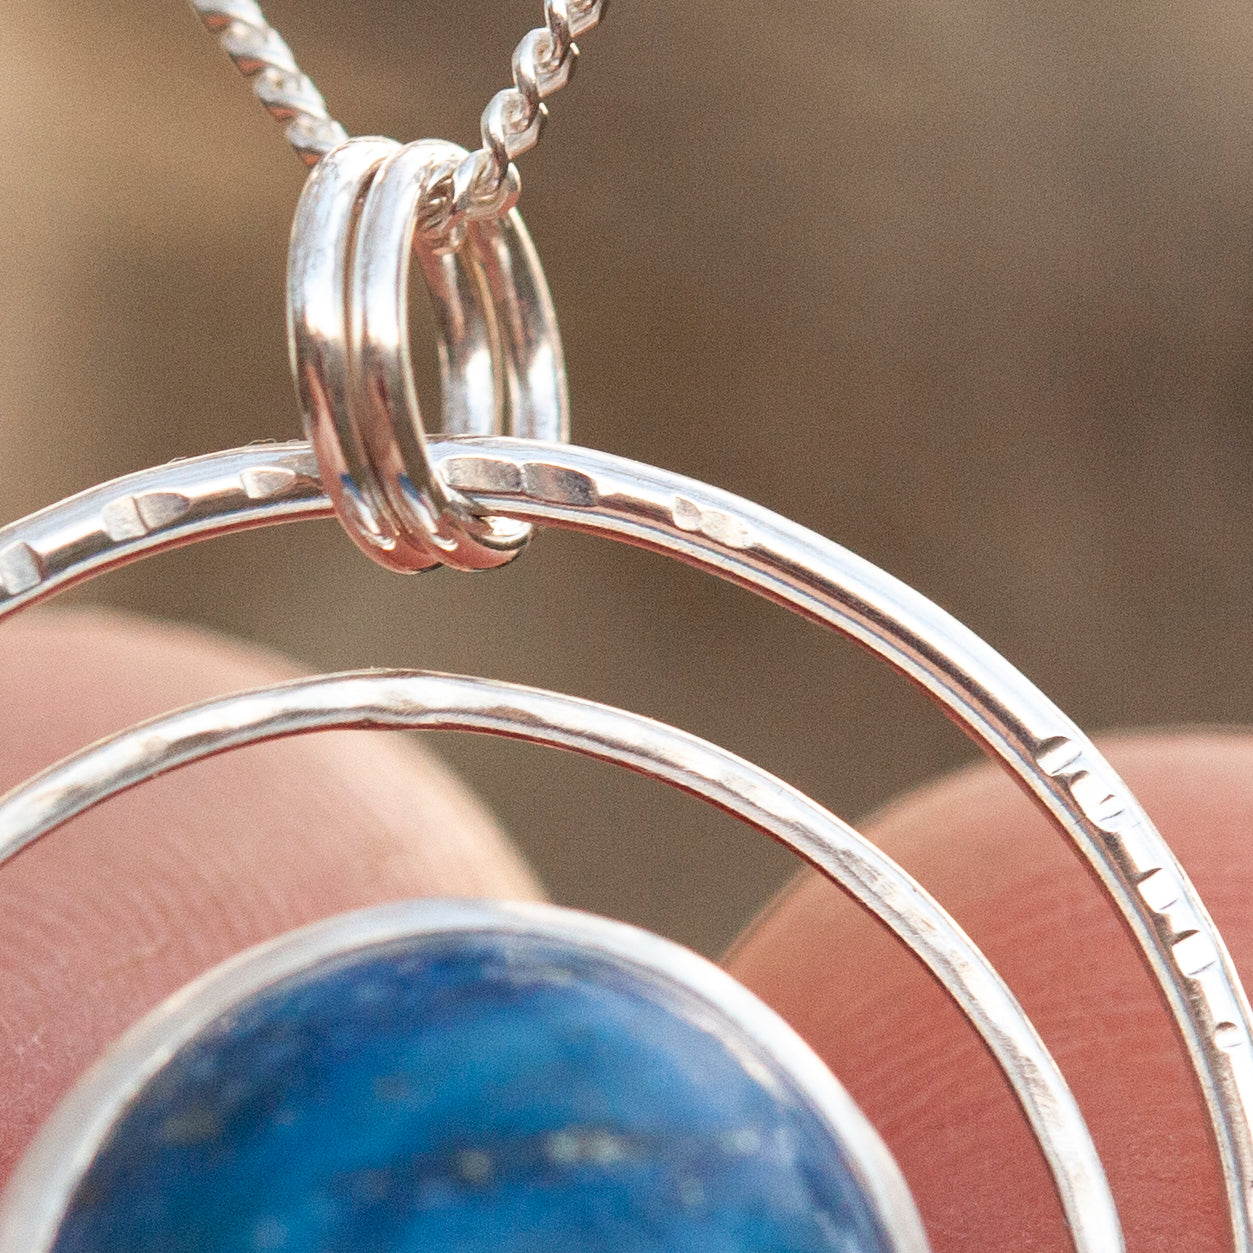 OOAK pendant with stone #1 • lapis lazuli   (ready to ship)